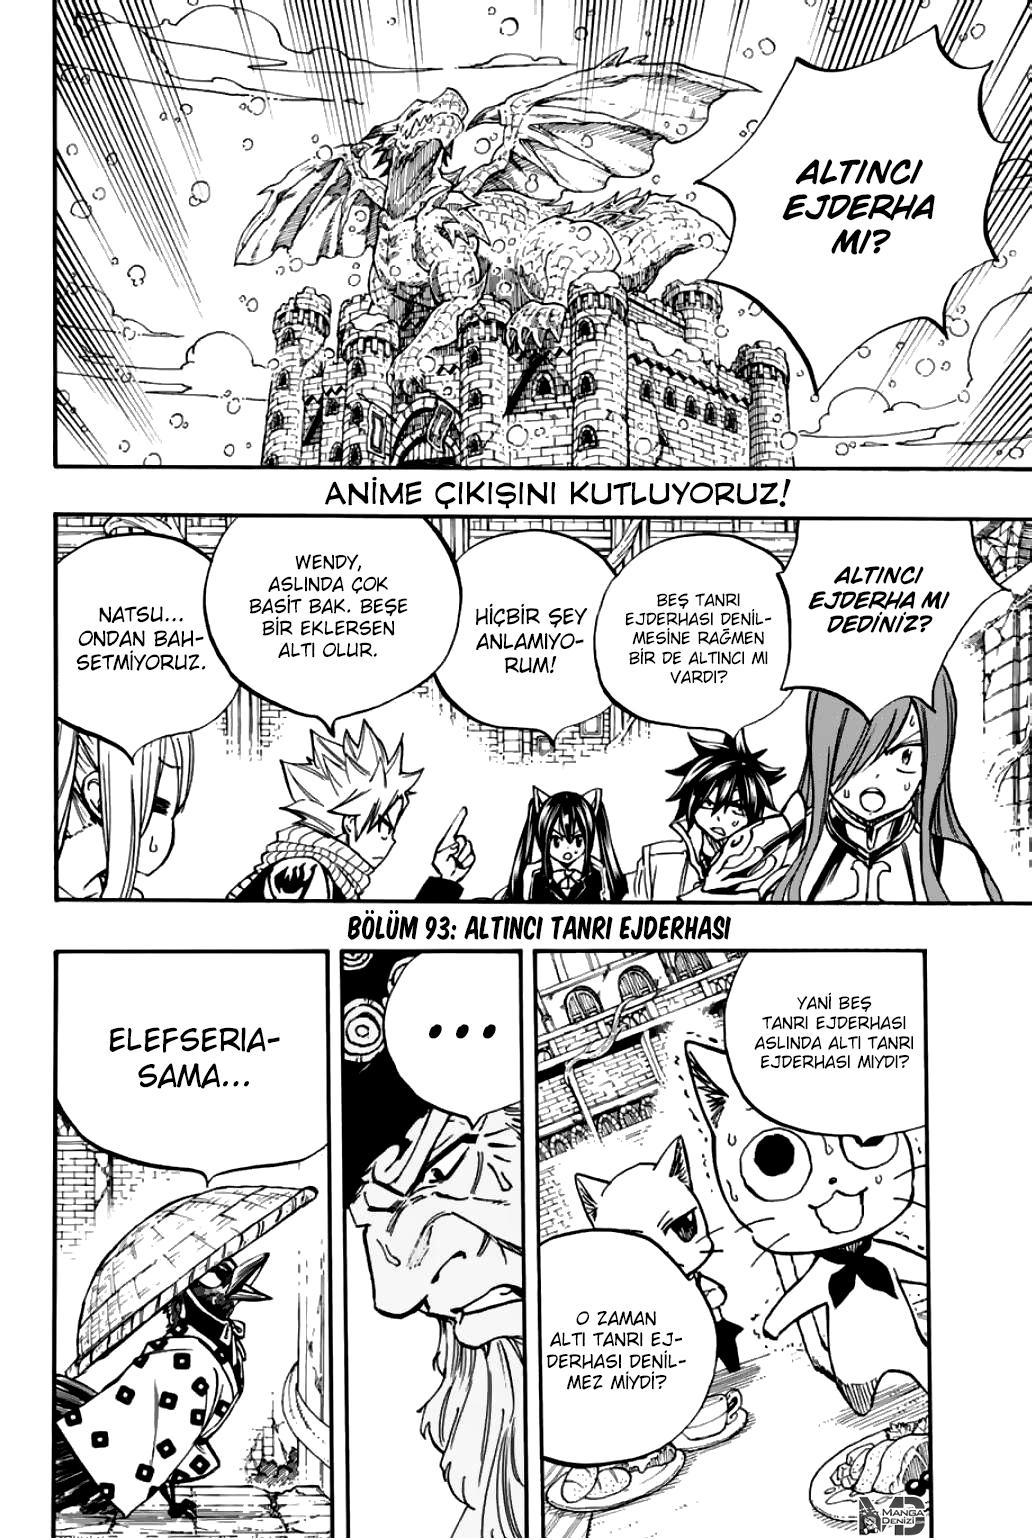 Fairy Tail: 100 Years Quest mangasının 093 bölümünün 3. sayfasını okuyorsunuz.